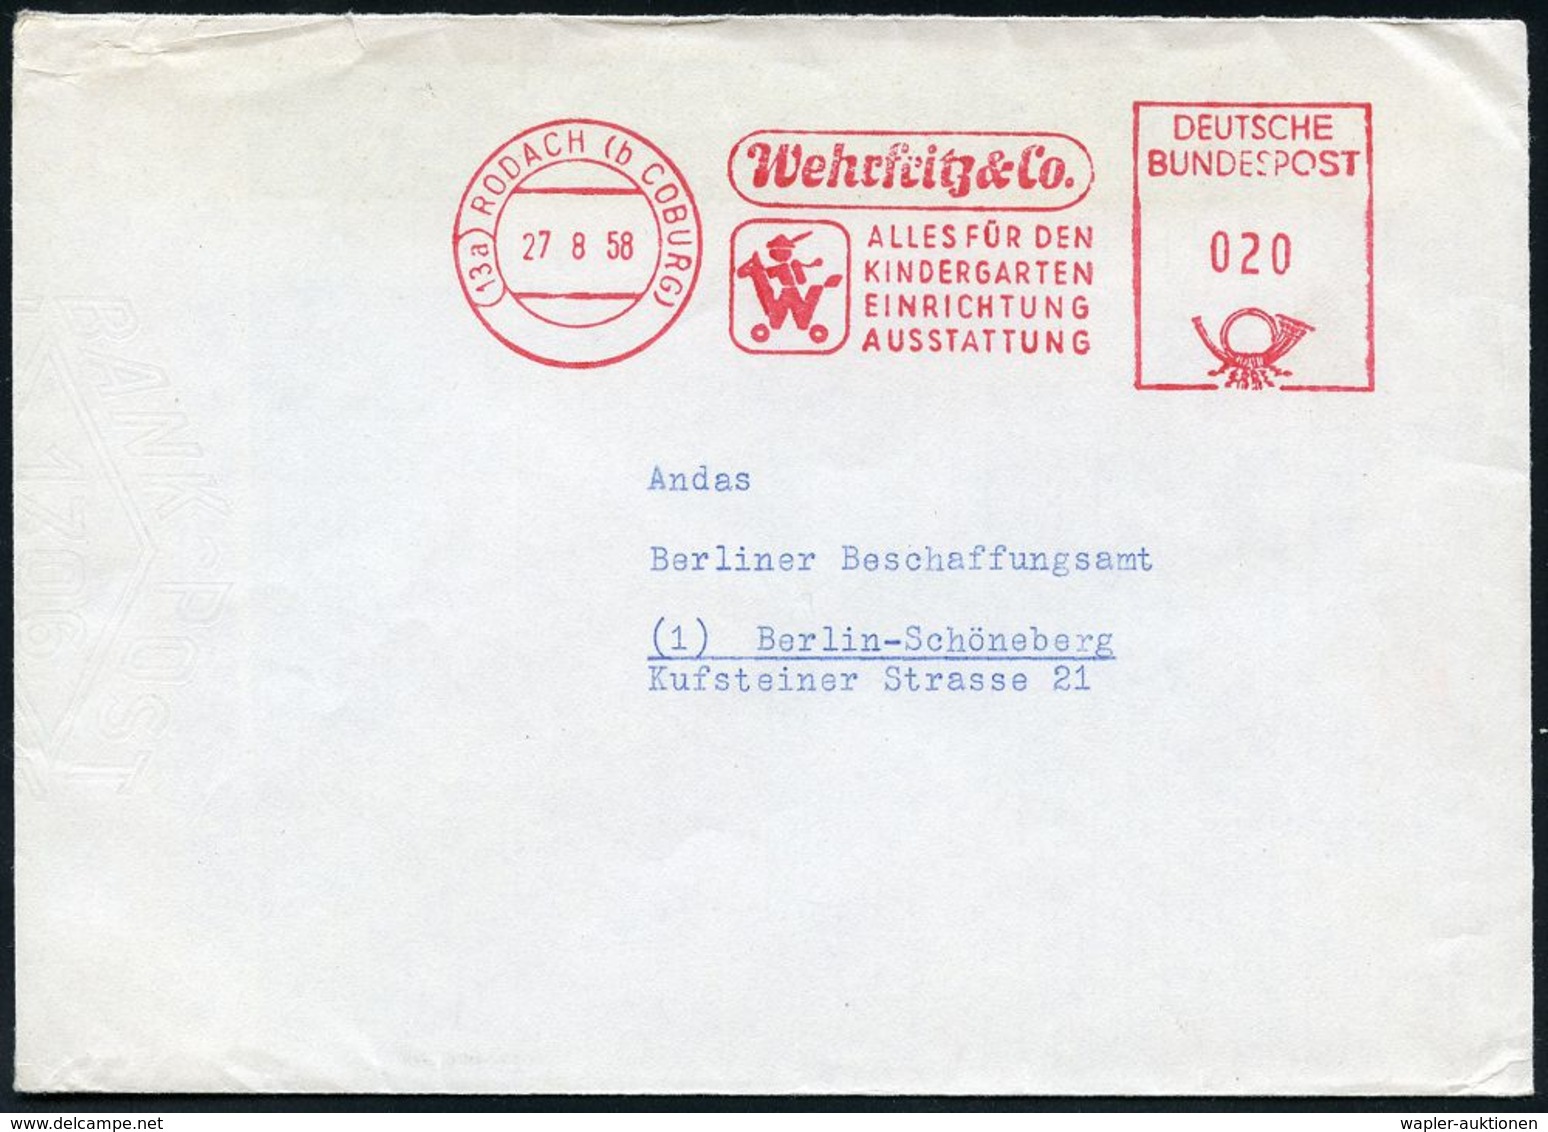 SPIELZEUG / SPIELZEUGMESSEN : (13a) RODACH (b COBURG)/ Wehrfrotz & Co/ ALLES FÜR DEN/ KINDERGARTEN.. 1958 (27.8.) Dekora - Unclassified